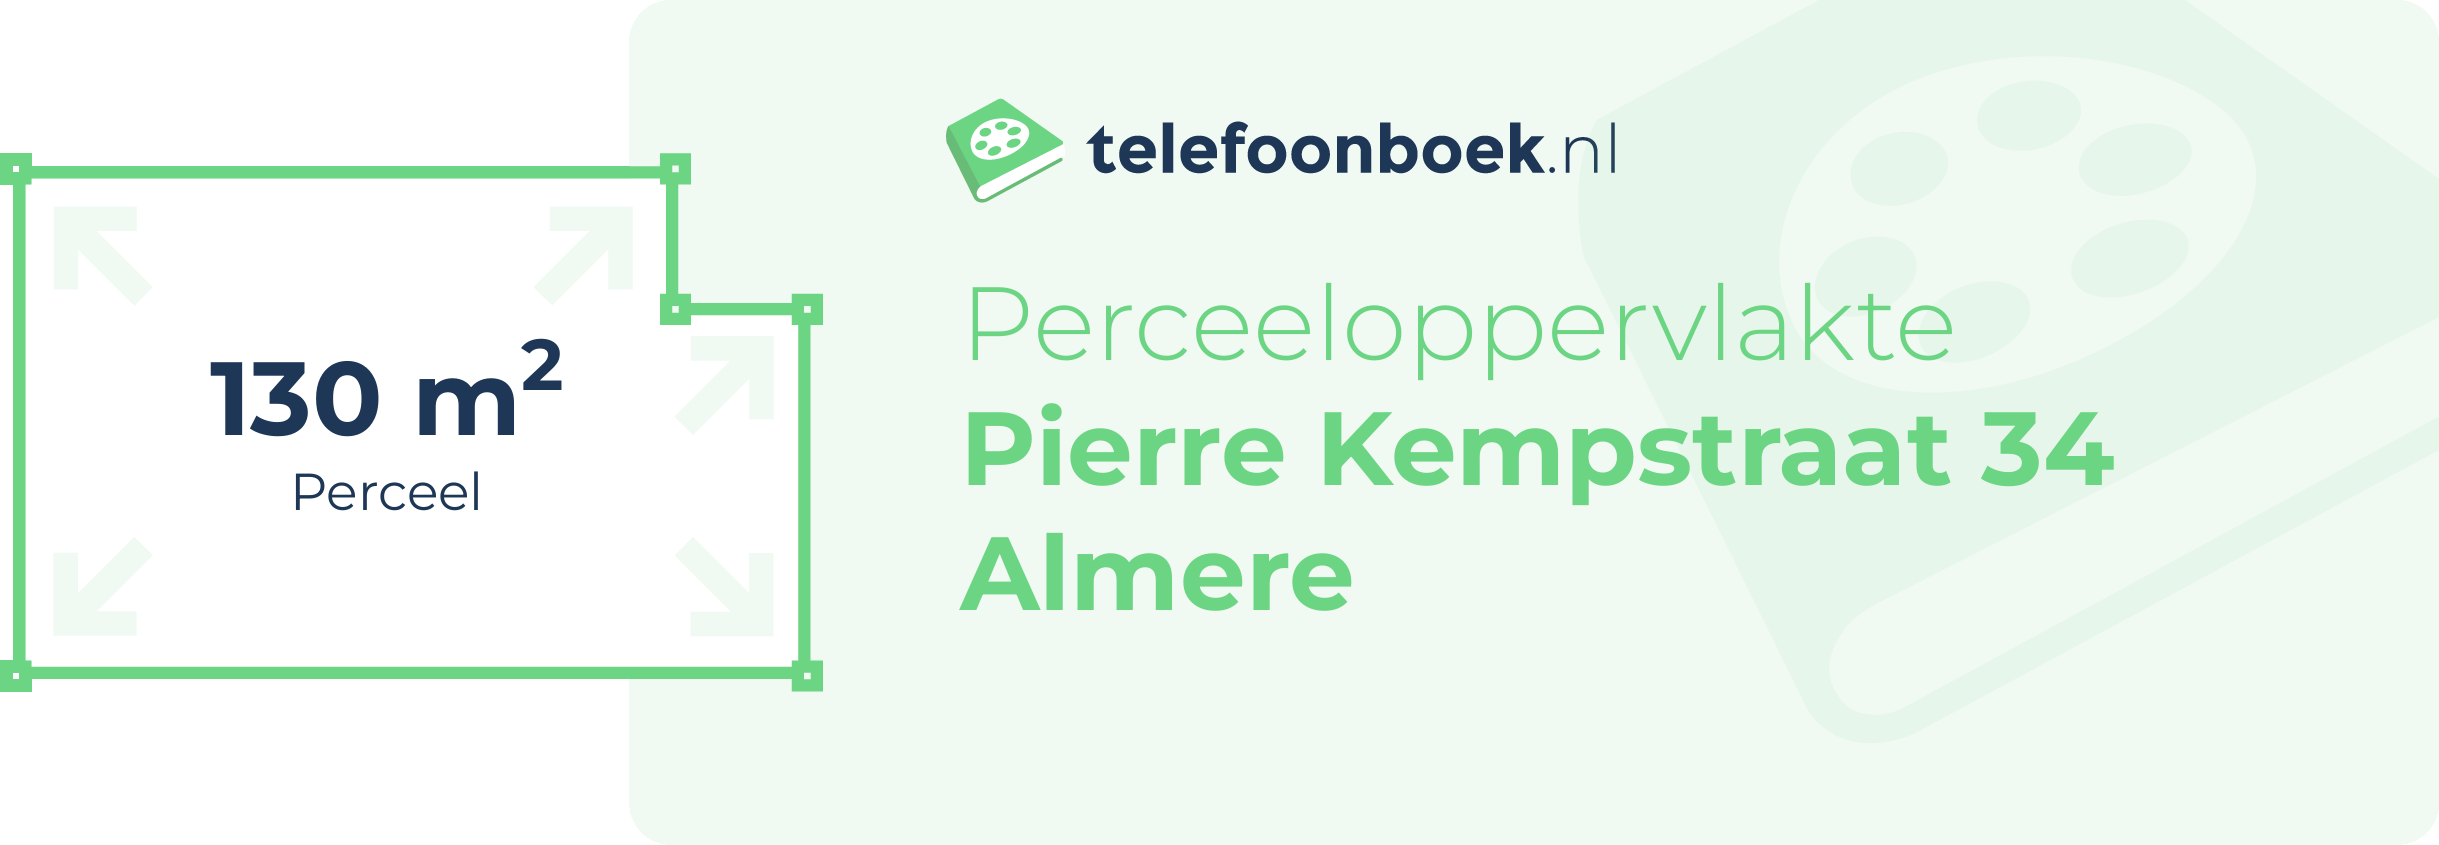 Perceeloppervlakte Pierre Kempstraat 34 Almere